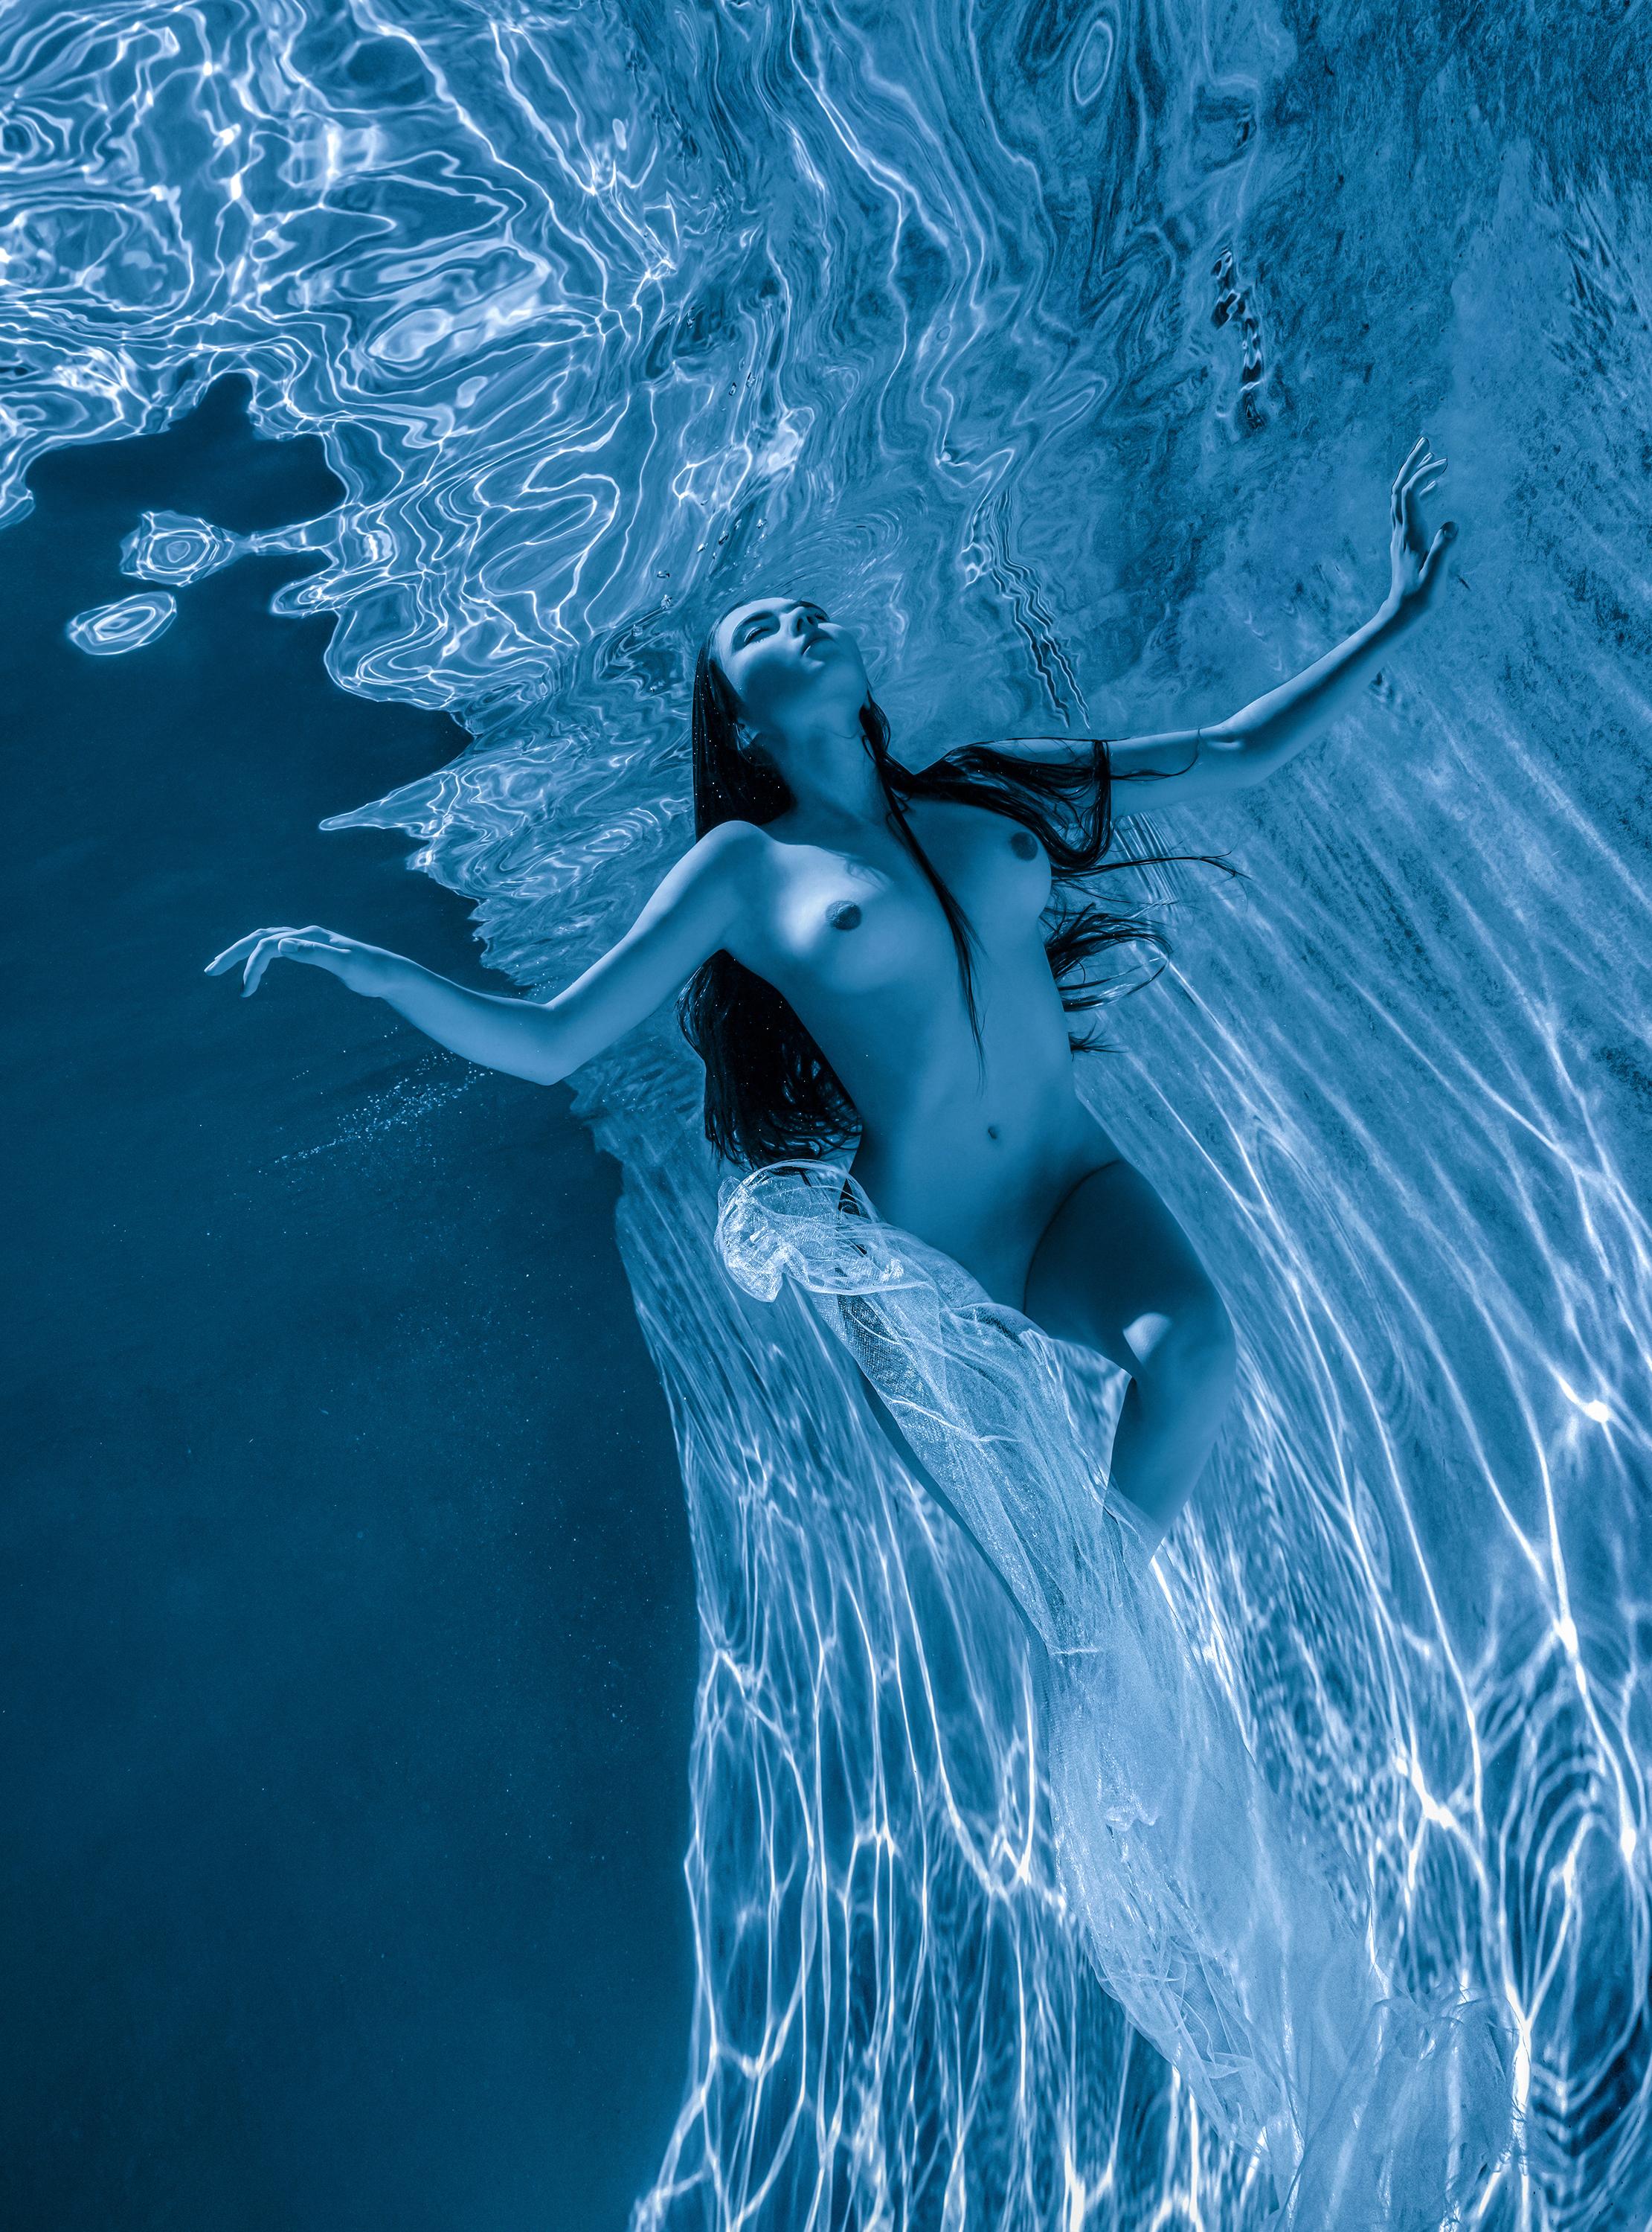 Alex Sher Nude Photograph – Freitaucher - Aktfotografie unter Wasser - Archivpigmentdruck 47х35"